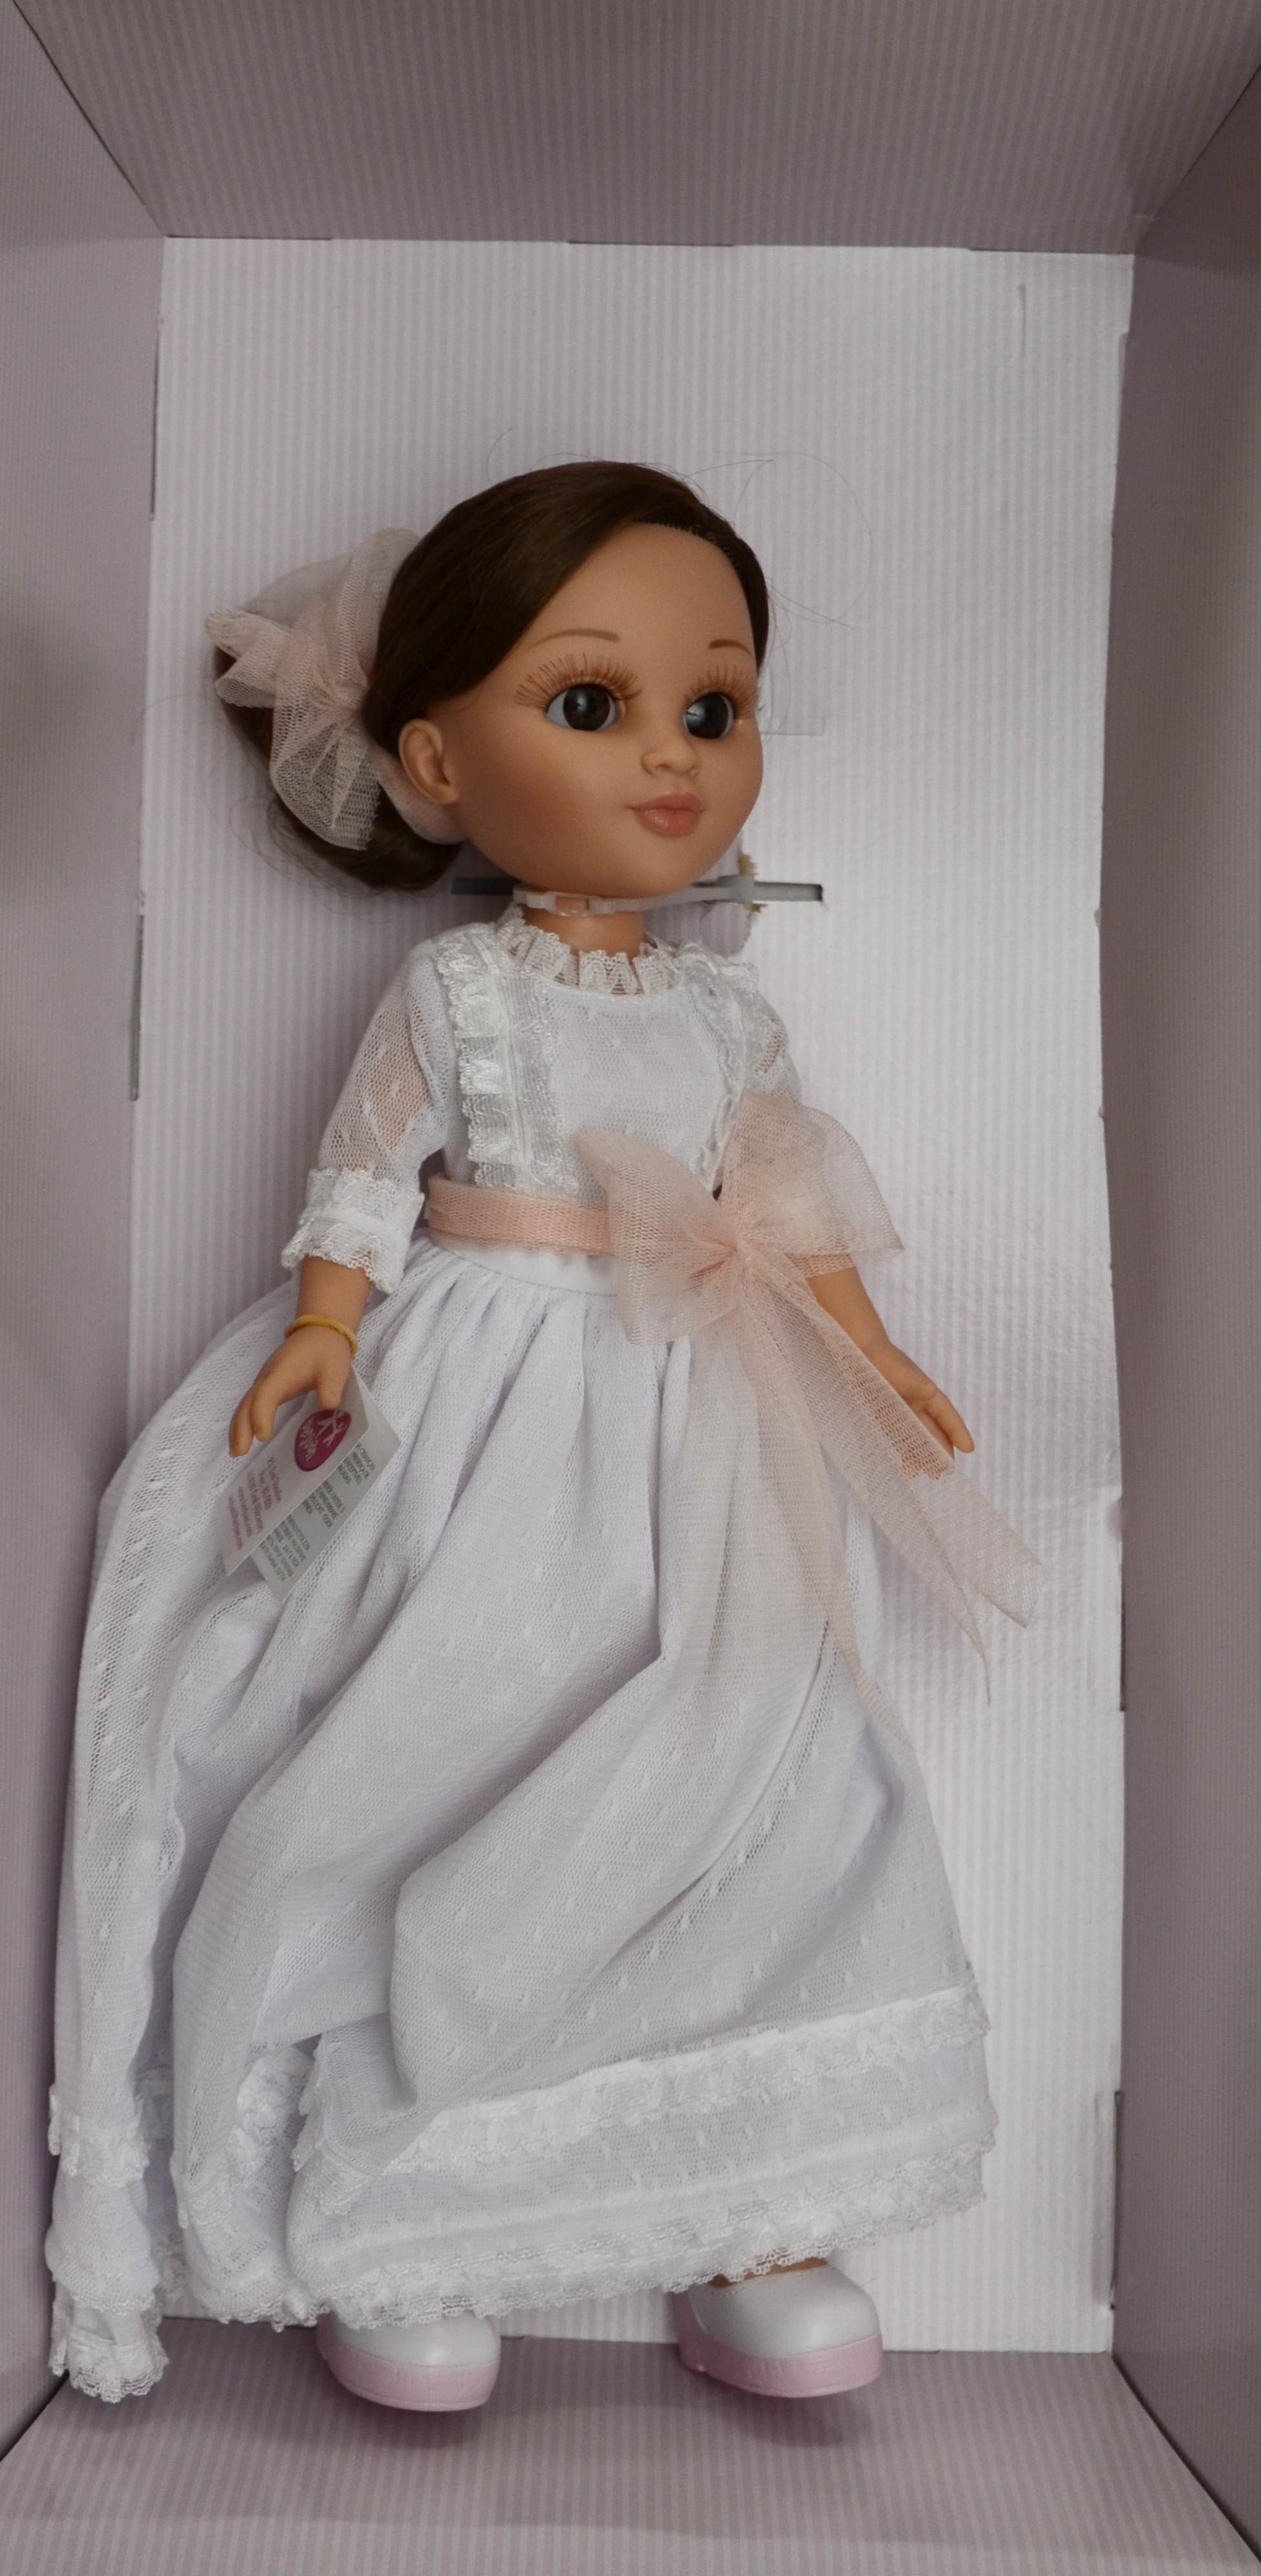 Realistická panenka Sofy v bílém s laclem od firmy Berjuan